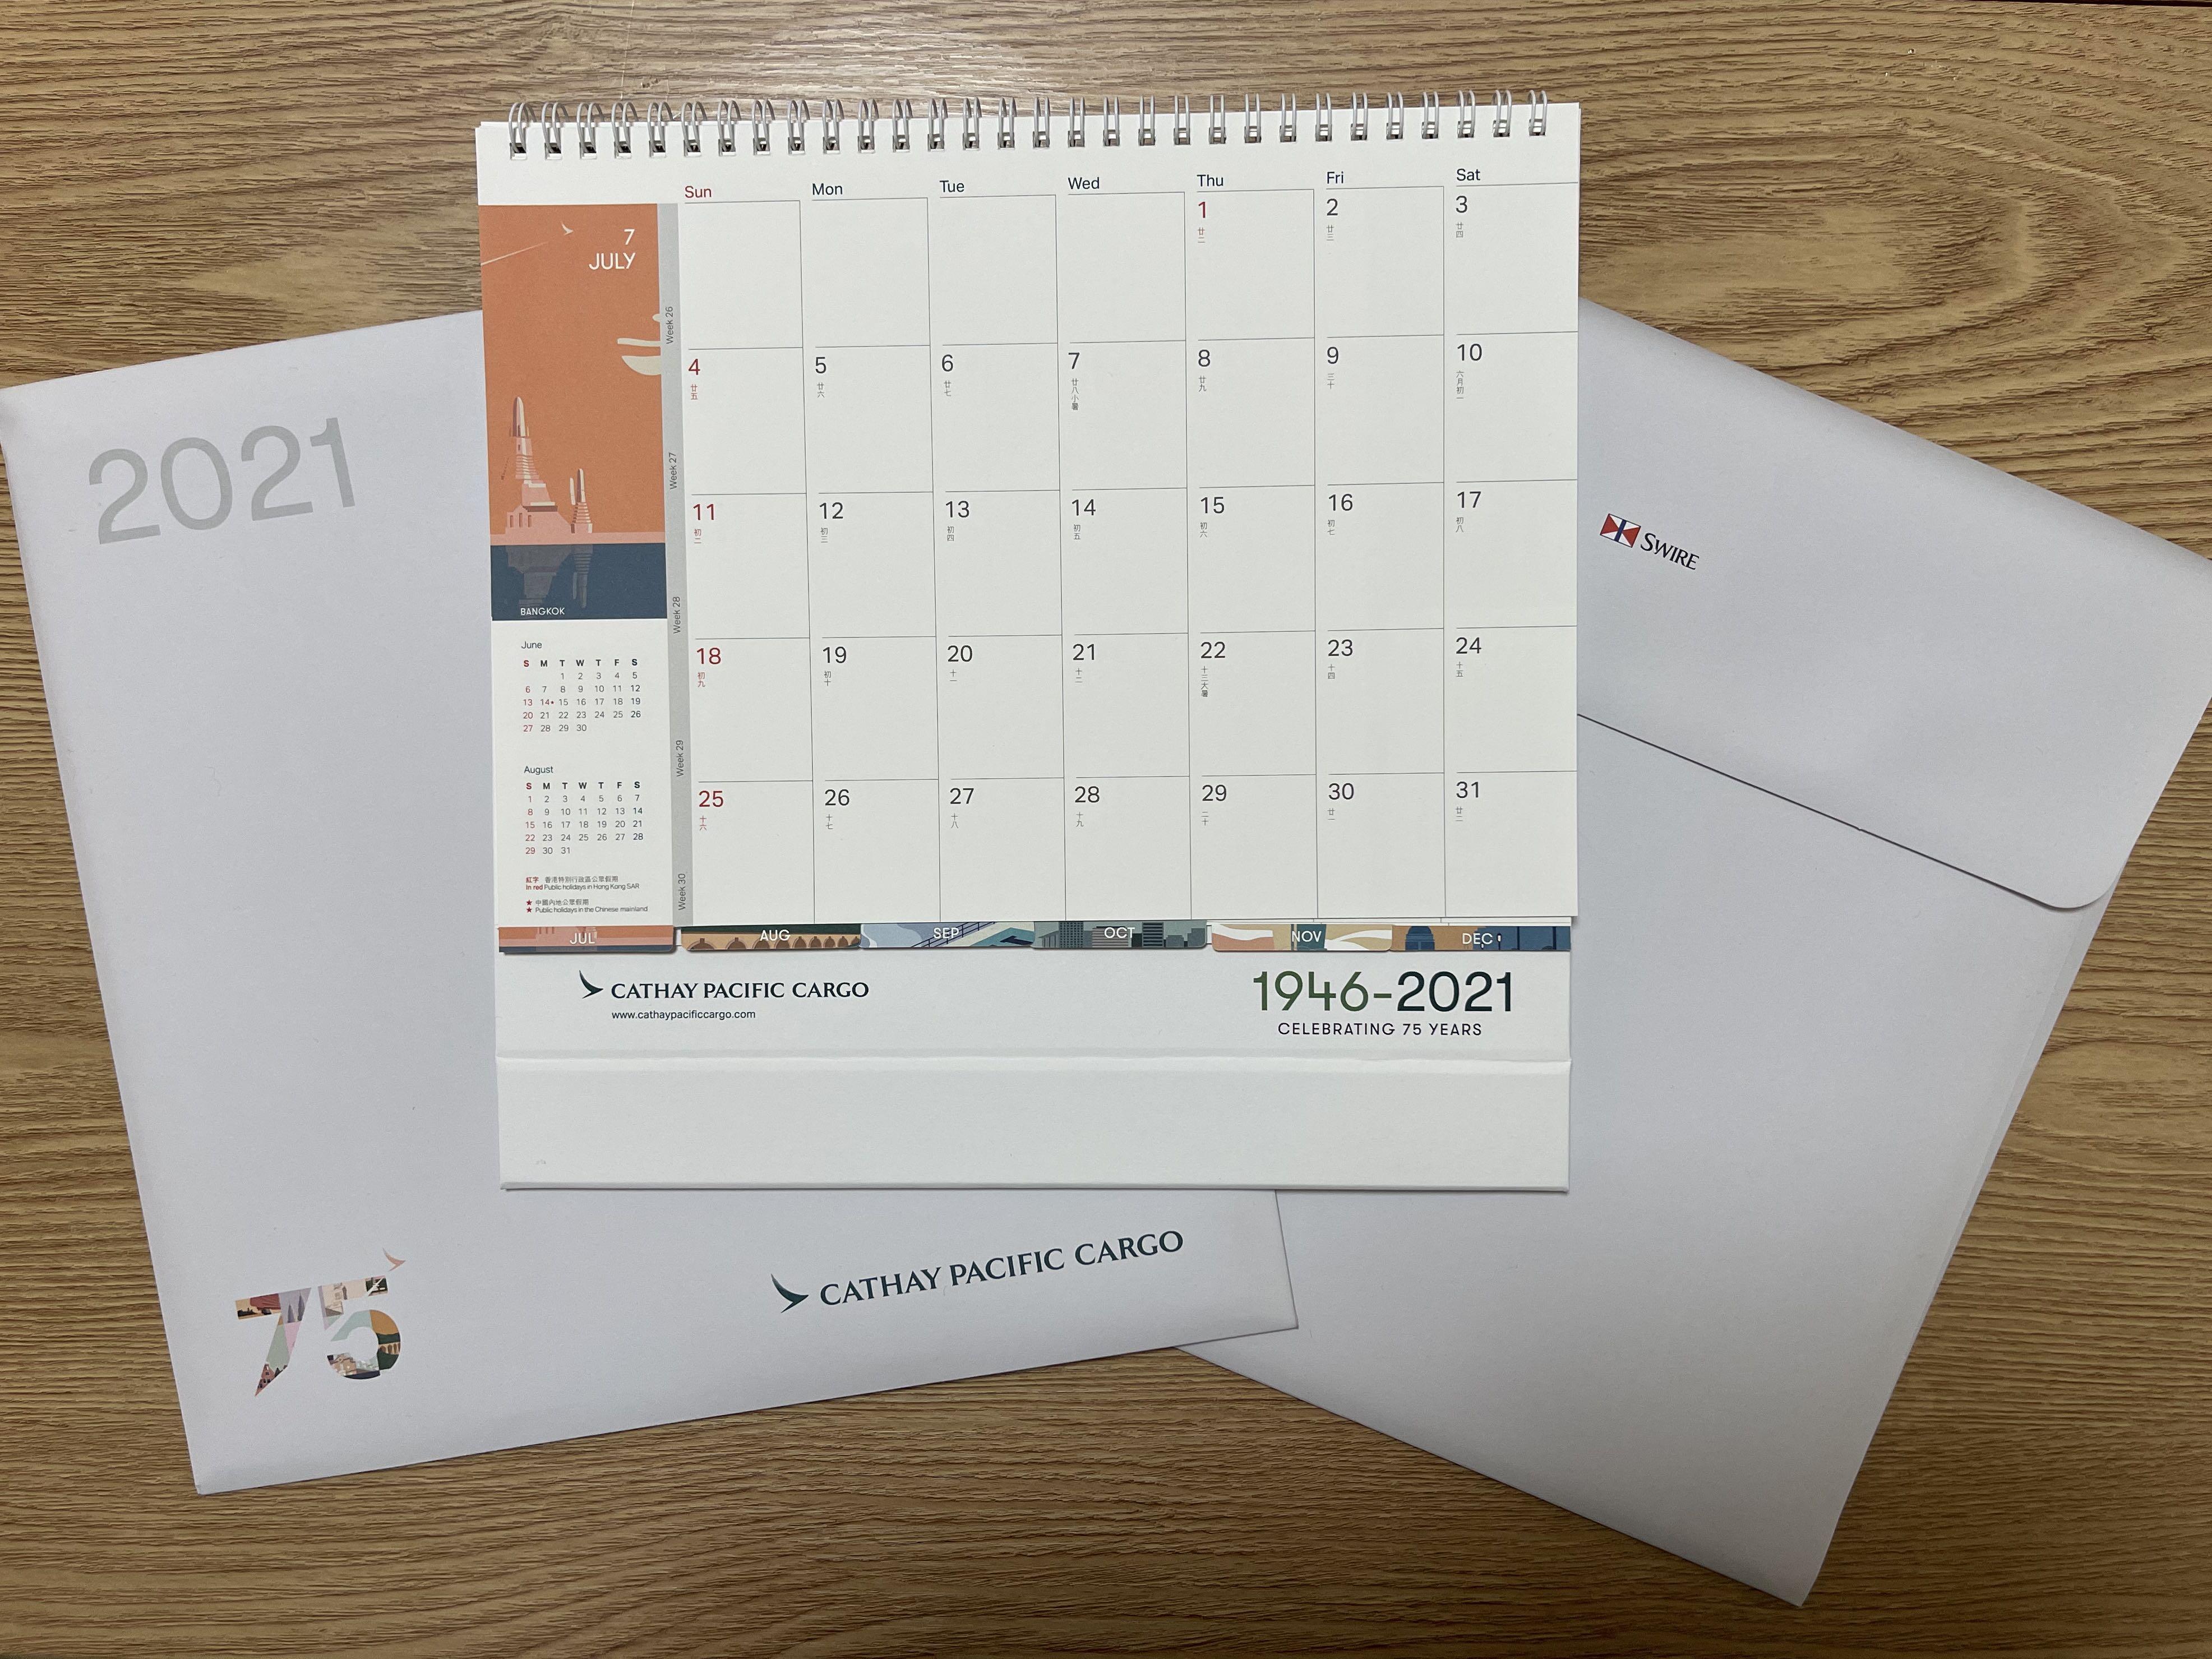 國泰航空 2021年 貨運部座枱月曆 Cathay Pacific Cargo Desktop Calendar 2021, 興趣及遊戲